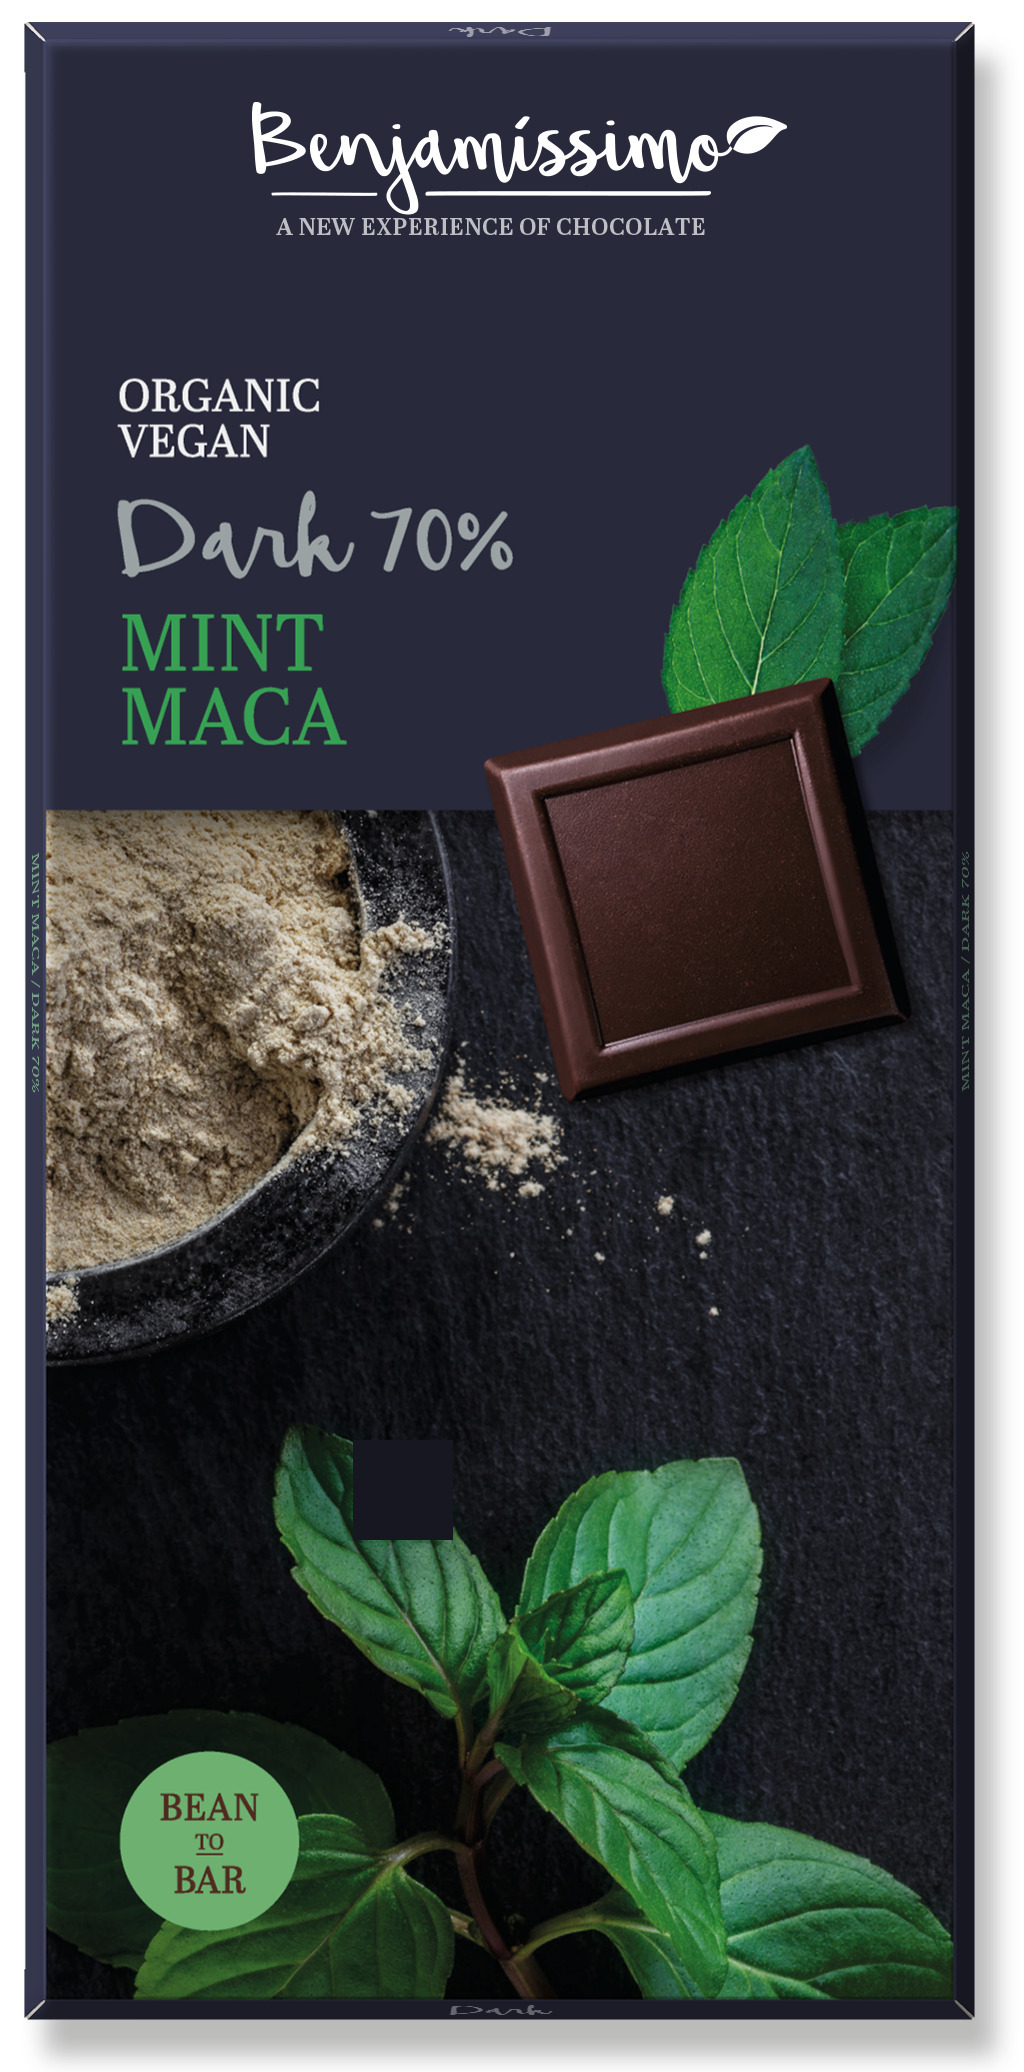 <h2><span style="font-size: 18.72px;">Ciocolata cu menta si maca bio, 70g, Benjamissimo</span></h2><p>Ciocolata din ingrediente provenite din agricultura ecologica, fara gluten. Traieste o noua experienta a gustului cu gama de ciocolata Benjamissimo.</p><p><strong>Ingrediente:</strong> masa de cacao*, zahar din trestie*, unt de cacao*, maca* 2%, lecitina de floarea soarelui*, ulei de menta* 0.03%.</p><p>*din agricultura ecologica</p><p><strong>Continut de cacao</strong>: minim 70%.</p><p><strong>Valori nutritionale/100g:</strong><br />Energie: 2442kj/587kcal<br />Grasimi: 40g din care saturate 26g<br />Carbohidrati: 38g din care zaharuri: 30g<br />Proteine: 7.4g<br />Sare: 0.08g</p><p>&nbsp;</p><p>Poate contine urme de nuci.</p><p>A se feri de lumina directa a soarelui.</p><p>Produs certificat ecologic</p><p>70g</p>